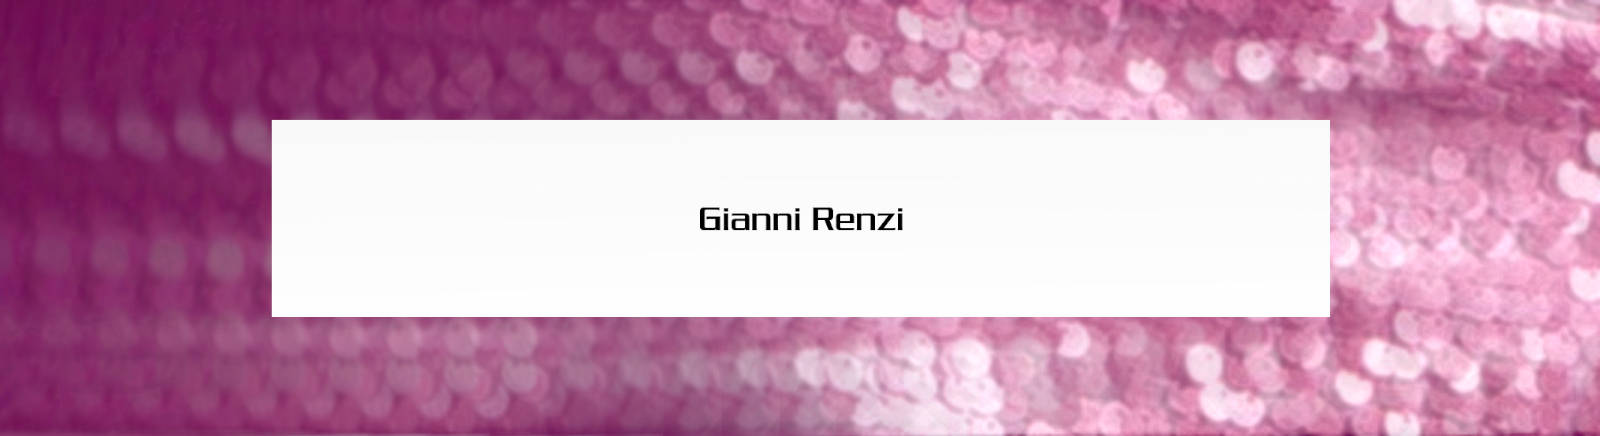 Prange: Gianni Renzi Schnürboots für Damen online shoppen